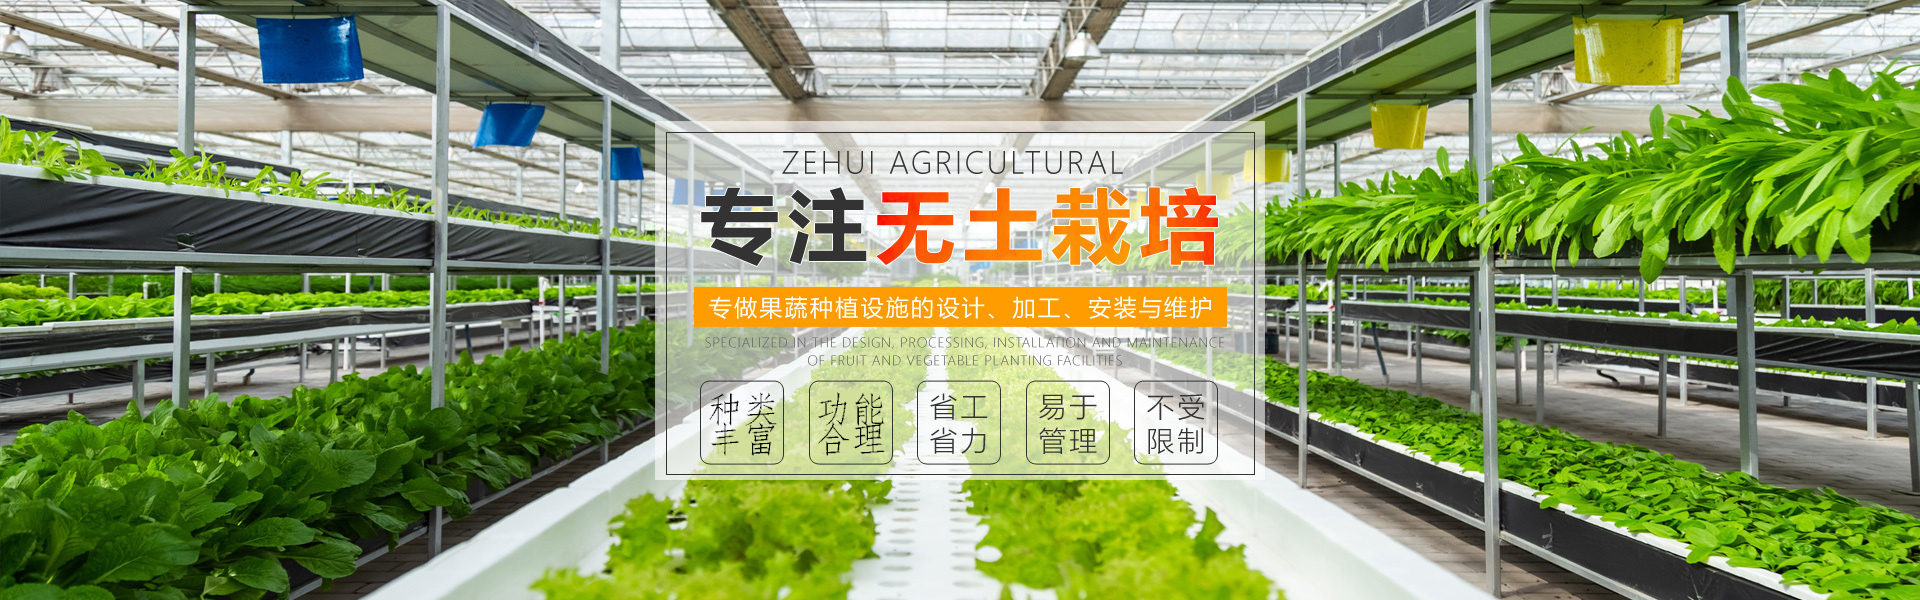 壽光澤惠農業科技有限公司